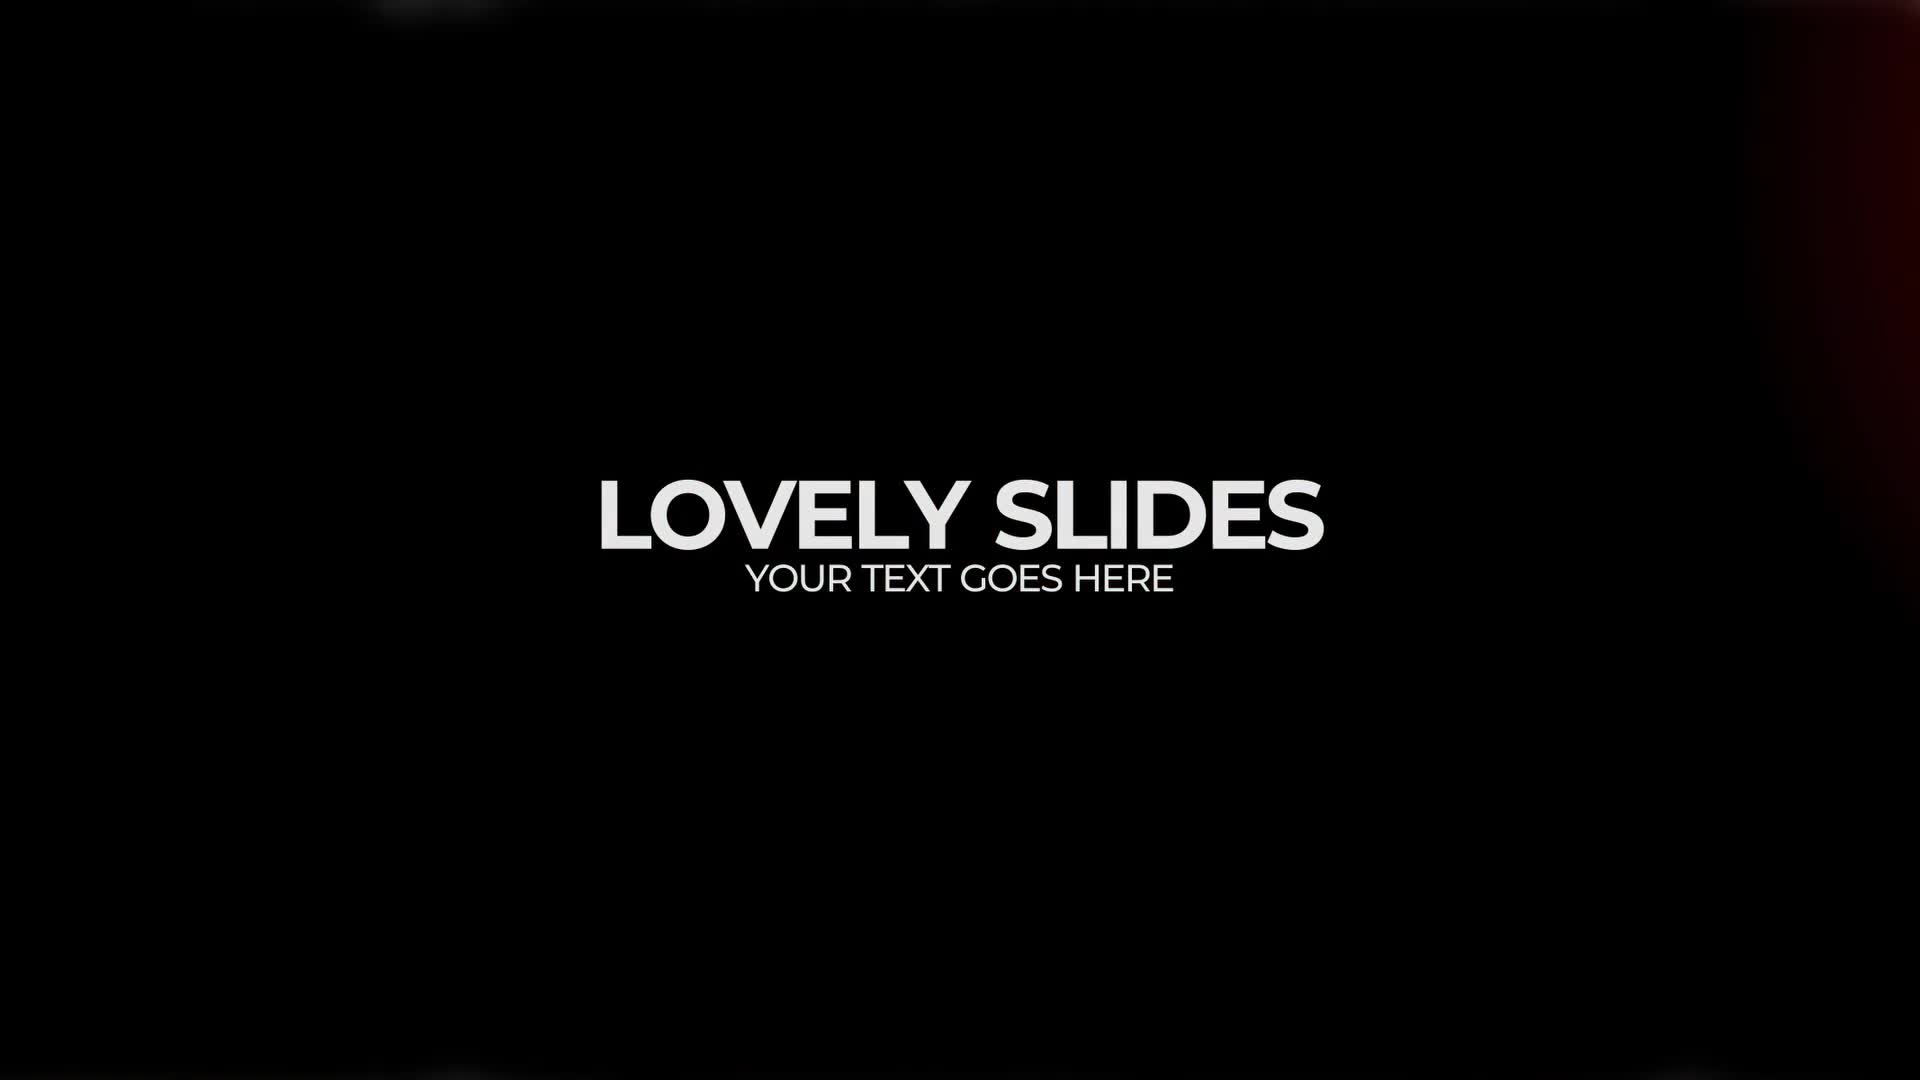 Lovely Slides | DR Videohive 37675512 DaVinci Resolve Image 1